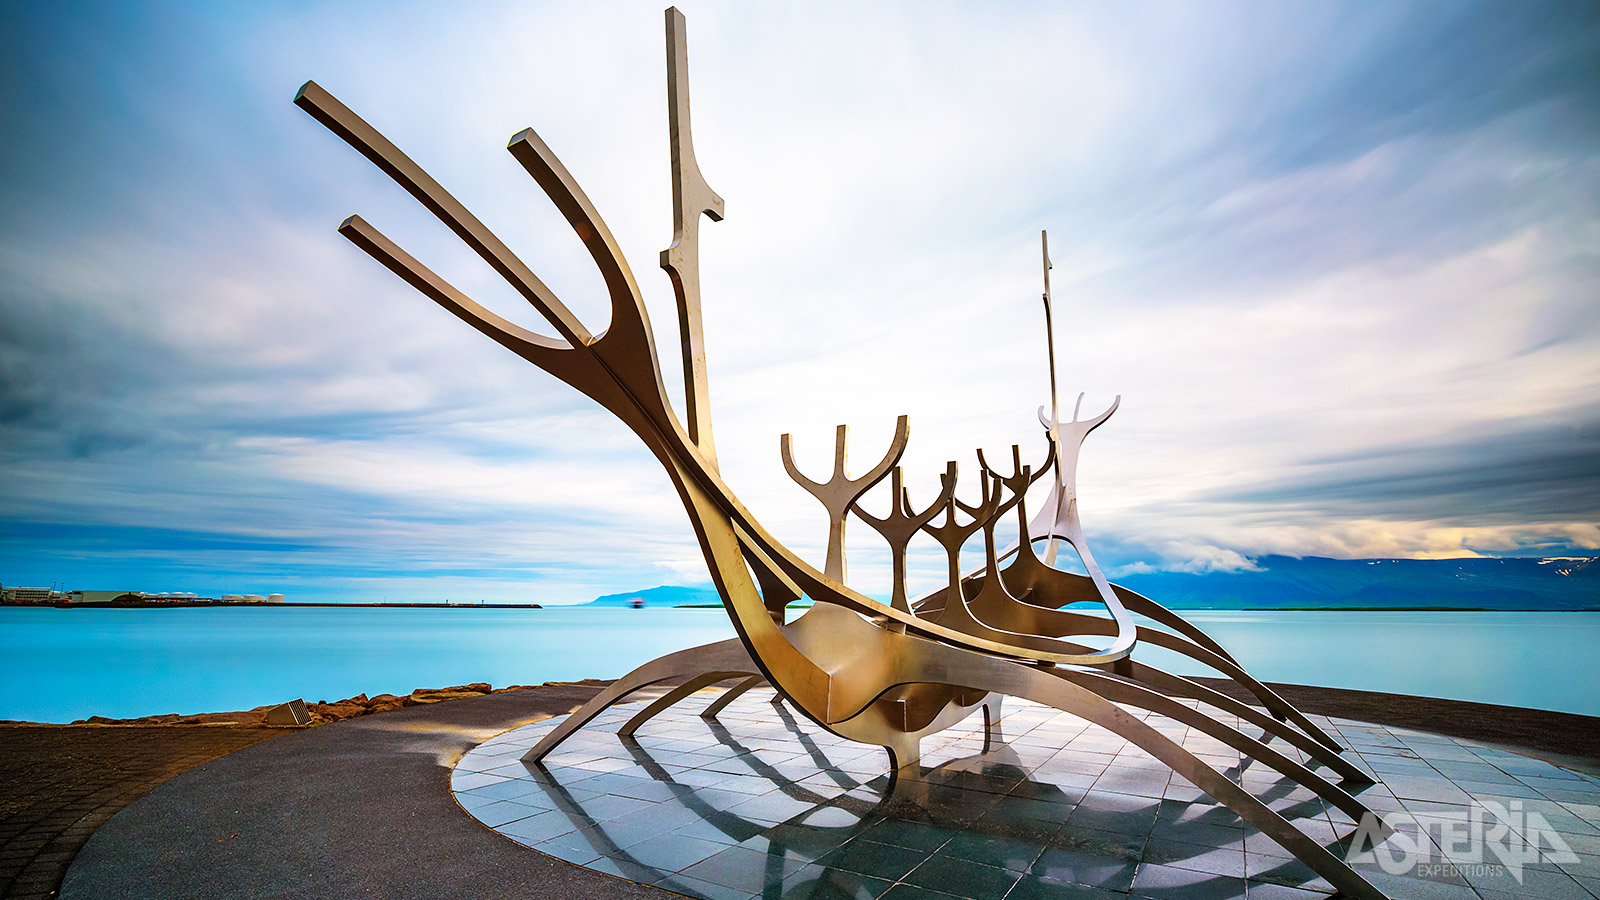 Het Sun Voyager kunstwerk is een ode aan de Vikingen, de eerste bewoners van IJsland